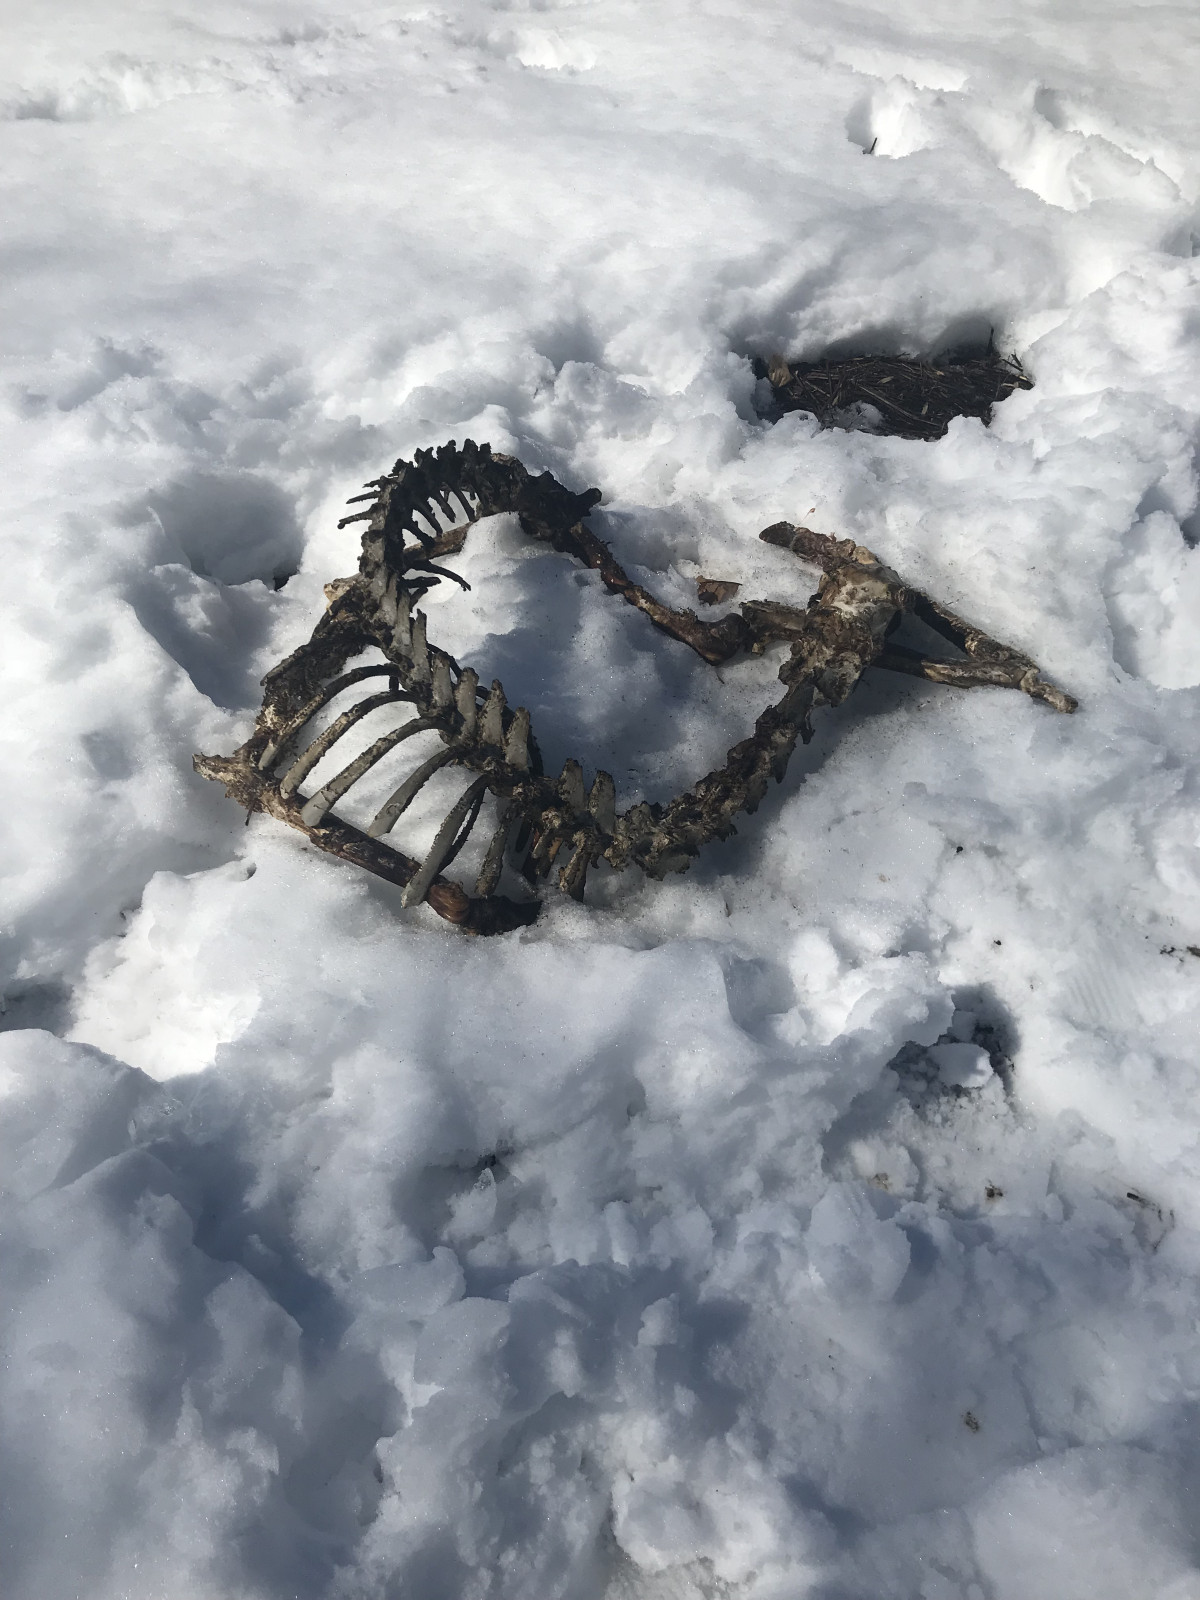 Animal skeleton in the snow, Storm King Art Center